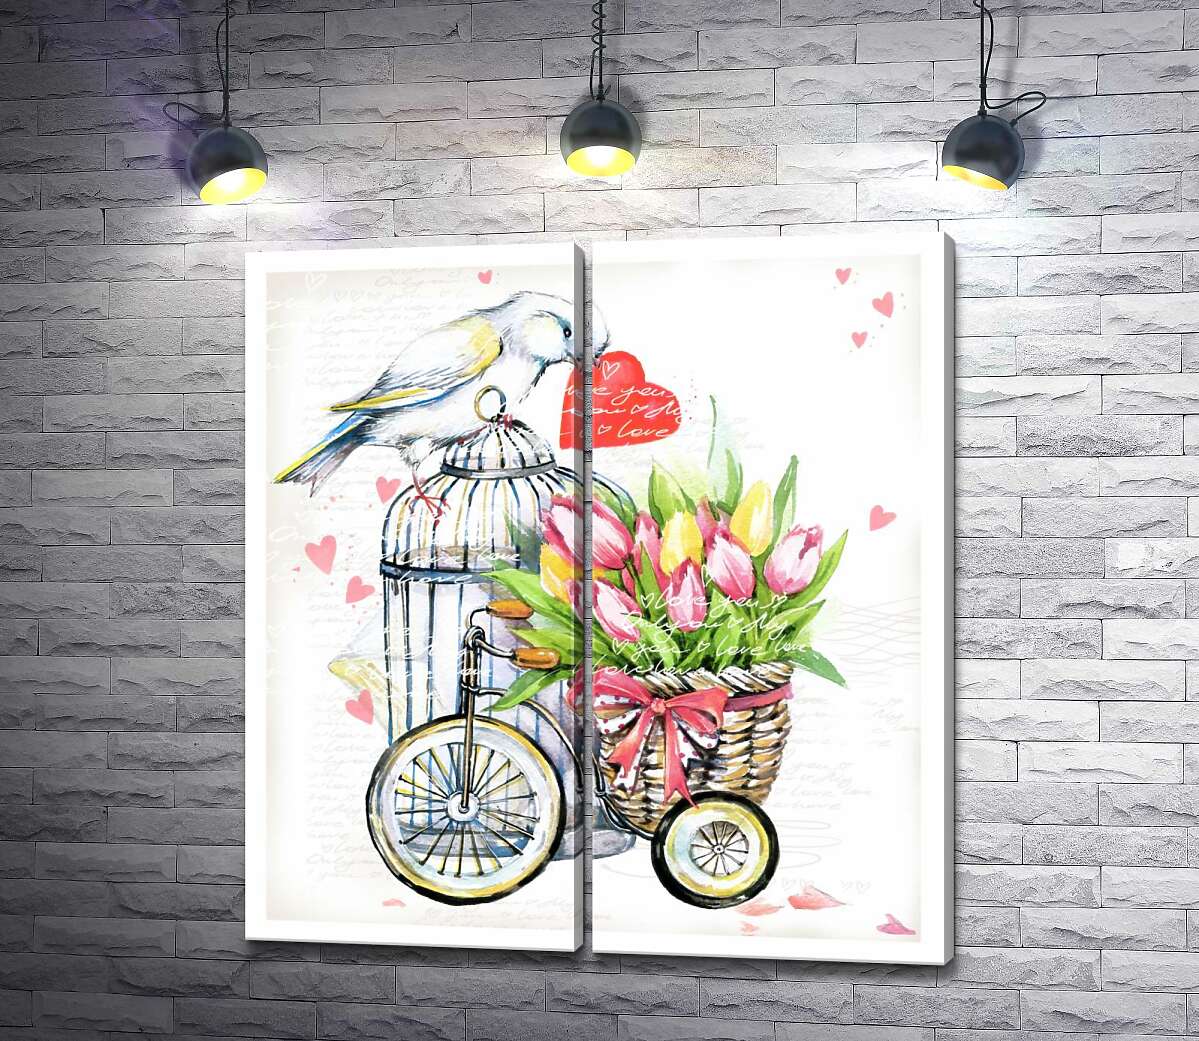 модульная картина Белая птица держит сердце в клюве рядом с корзиной весенних тюльпанов на велосипеде